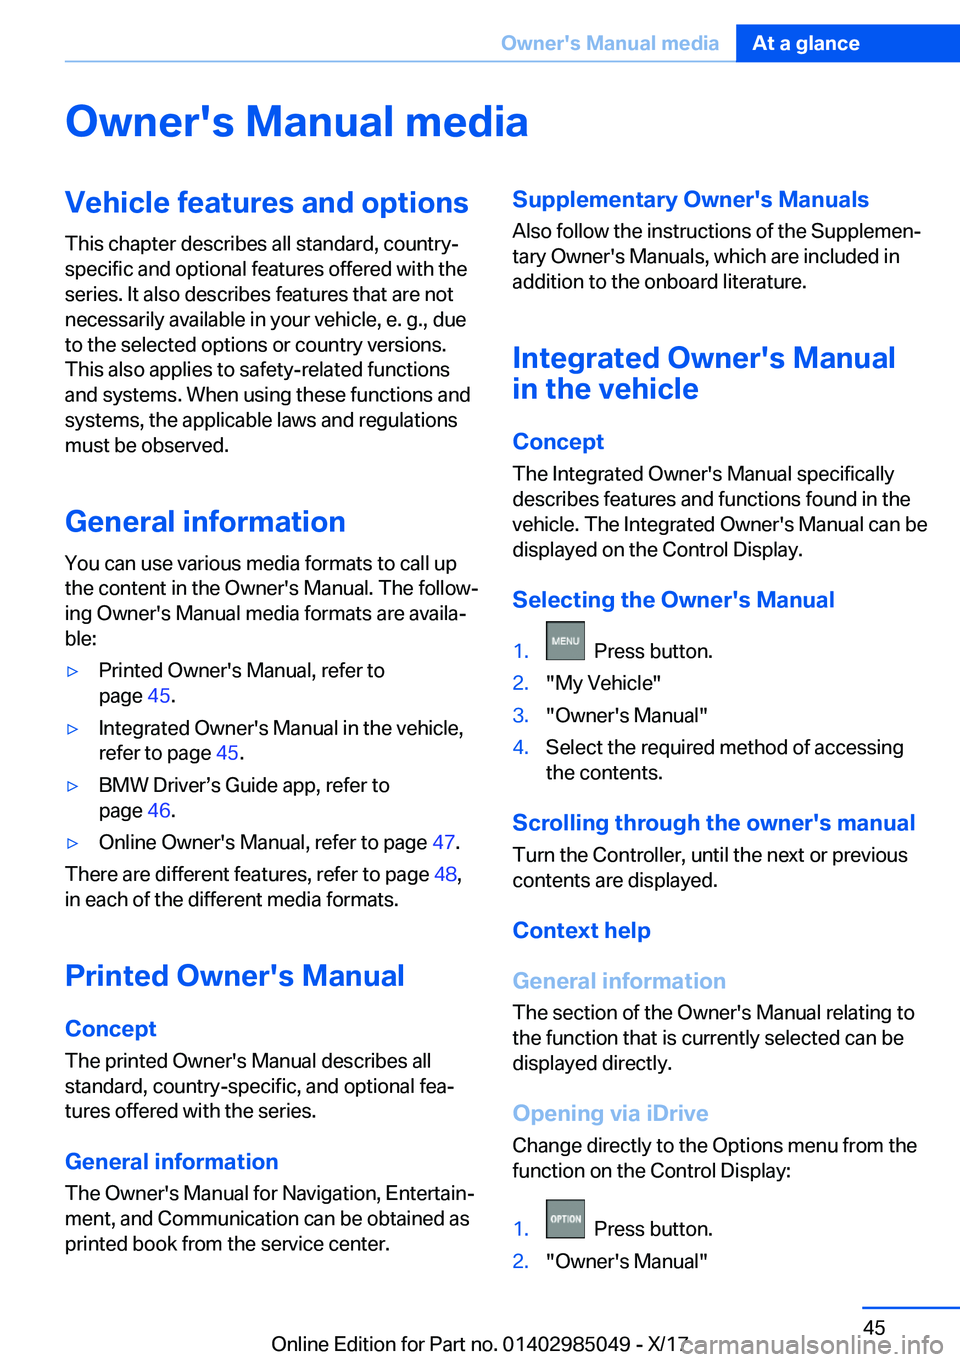 BMW X5M 2018 Service Manual �O�w�n�e�r�'�s��M�a�n�u�a�l��m�e�d�i�a�V�e�h�i�c�l�e��f�e�a�t�u�r�e�s��a�n�d��o�p�t�i�o�n�s�T�h�i�s� �c�h�a�p�t�e�r� �d�e�s�c�r�i�b�e�s� �a�l�l� �s�t�a�n�d�a�r�d�,� �c�o�u�n�t�r�y�-�s�p�e�c�i